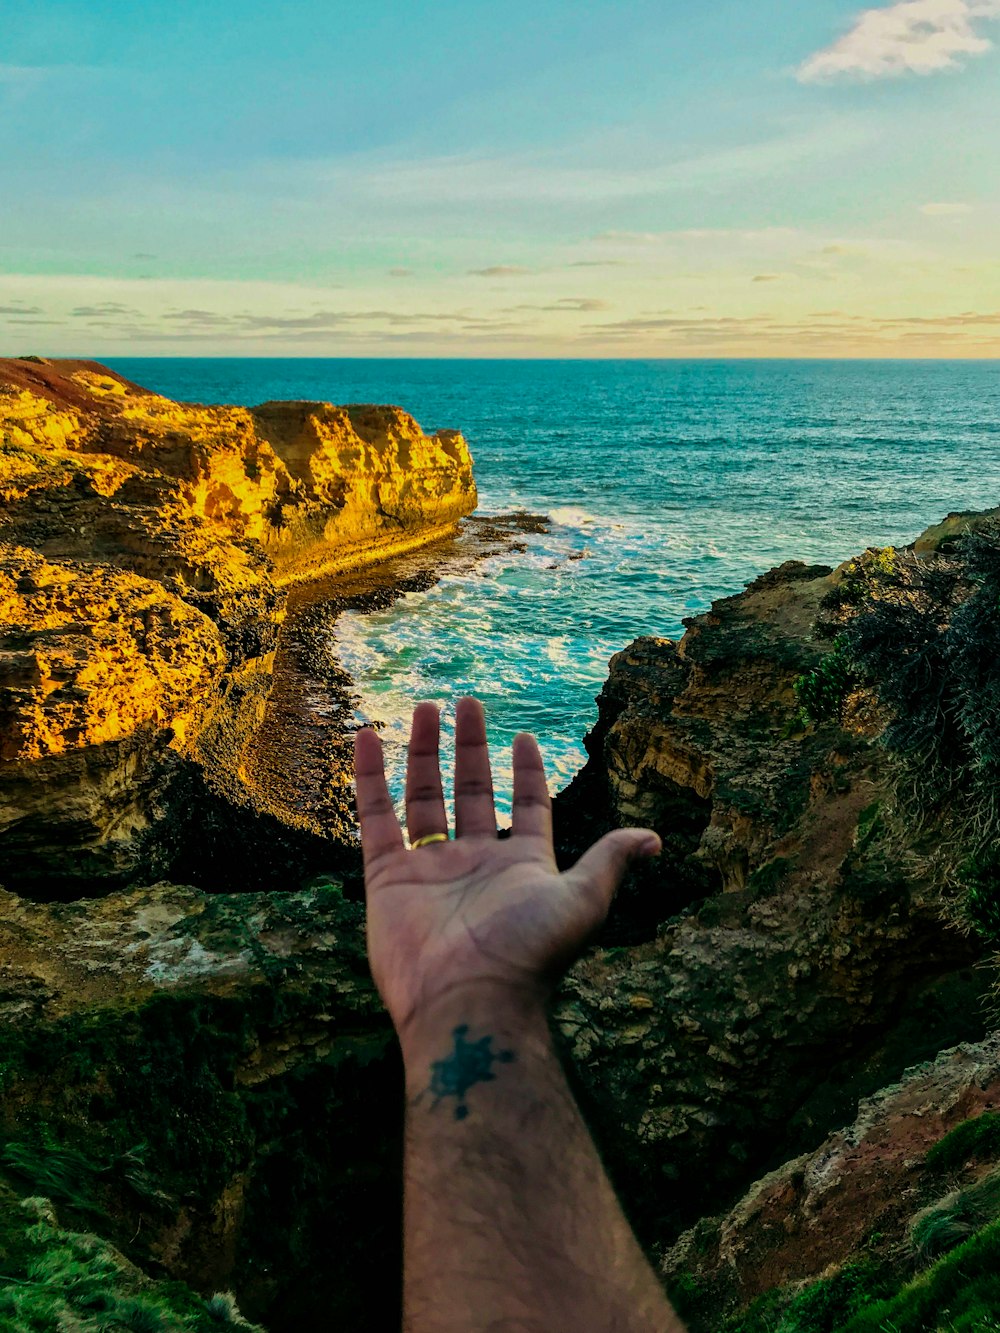 Personas con la mano en la formación rocosa marrón cerca del cuerpo de agua durante el día